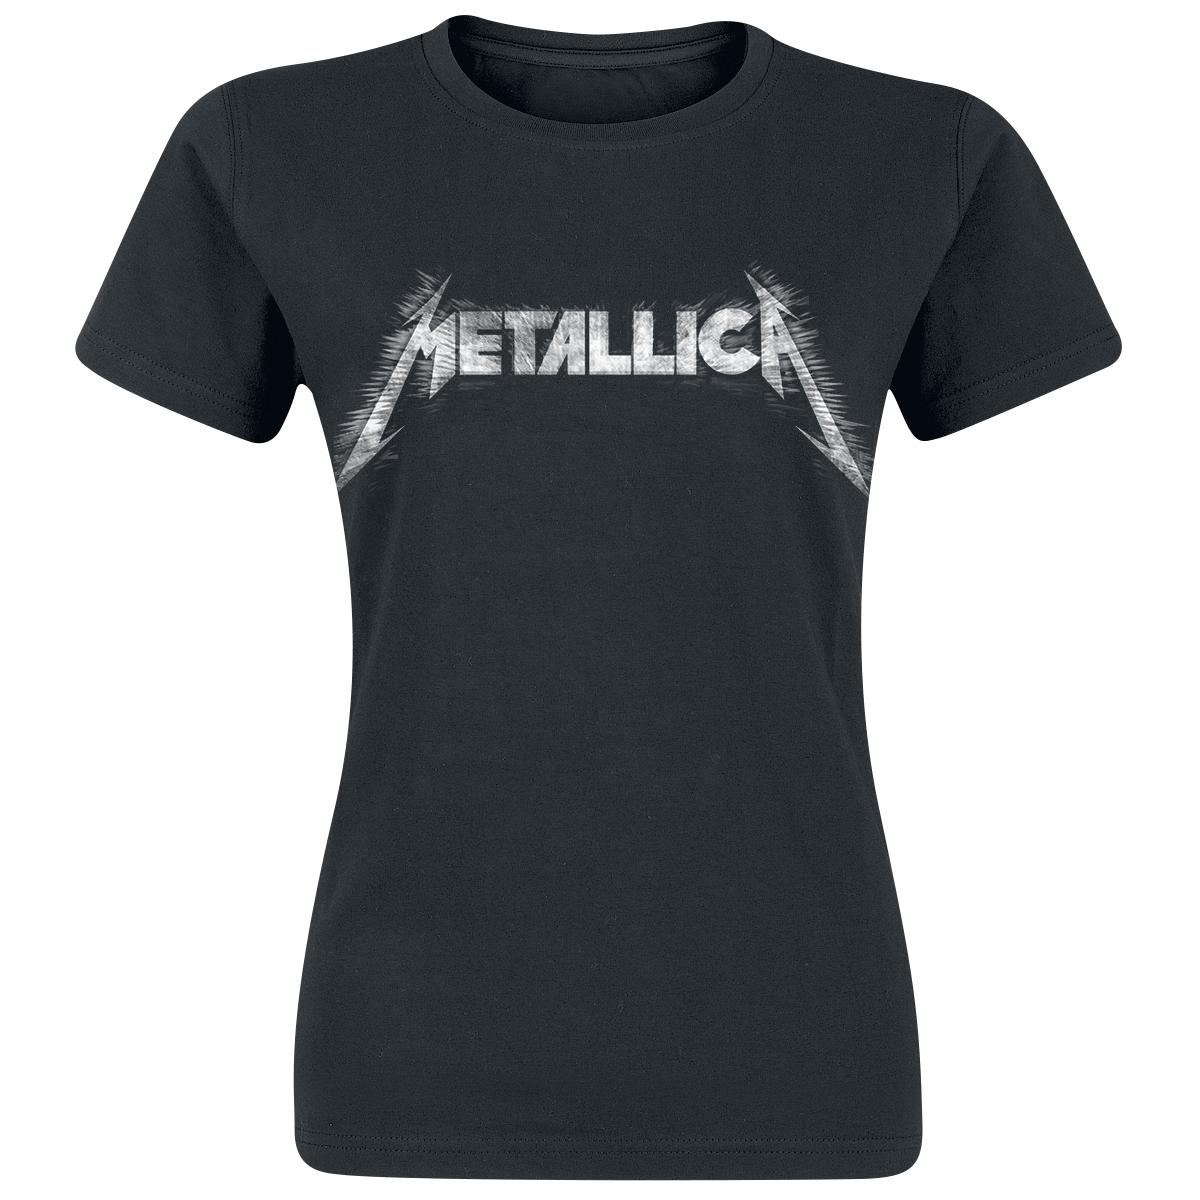 metallica-spikes-t-shirt